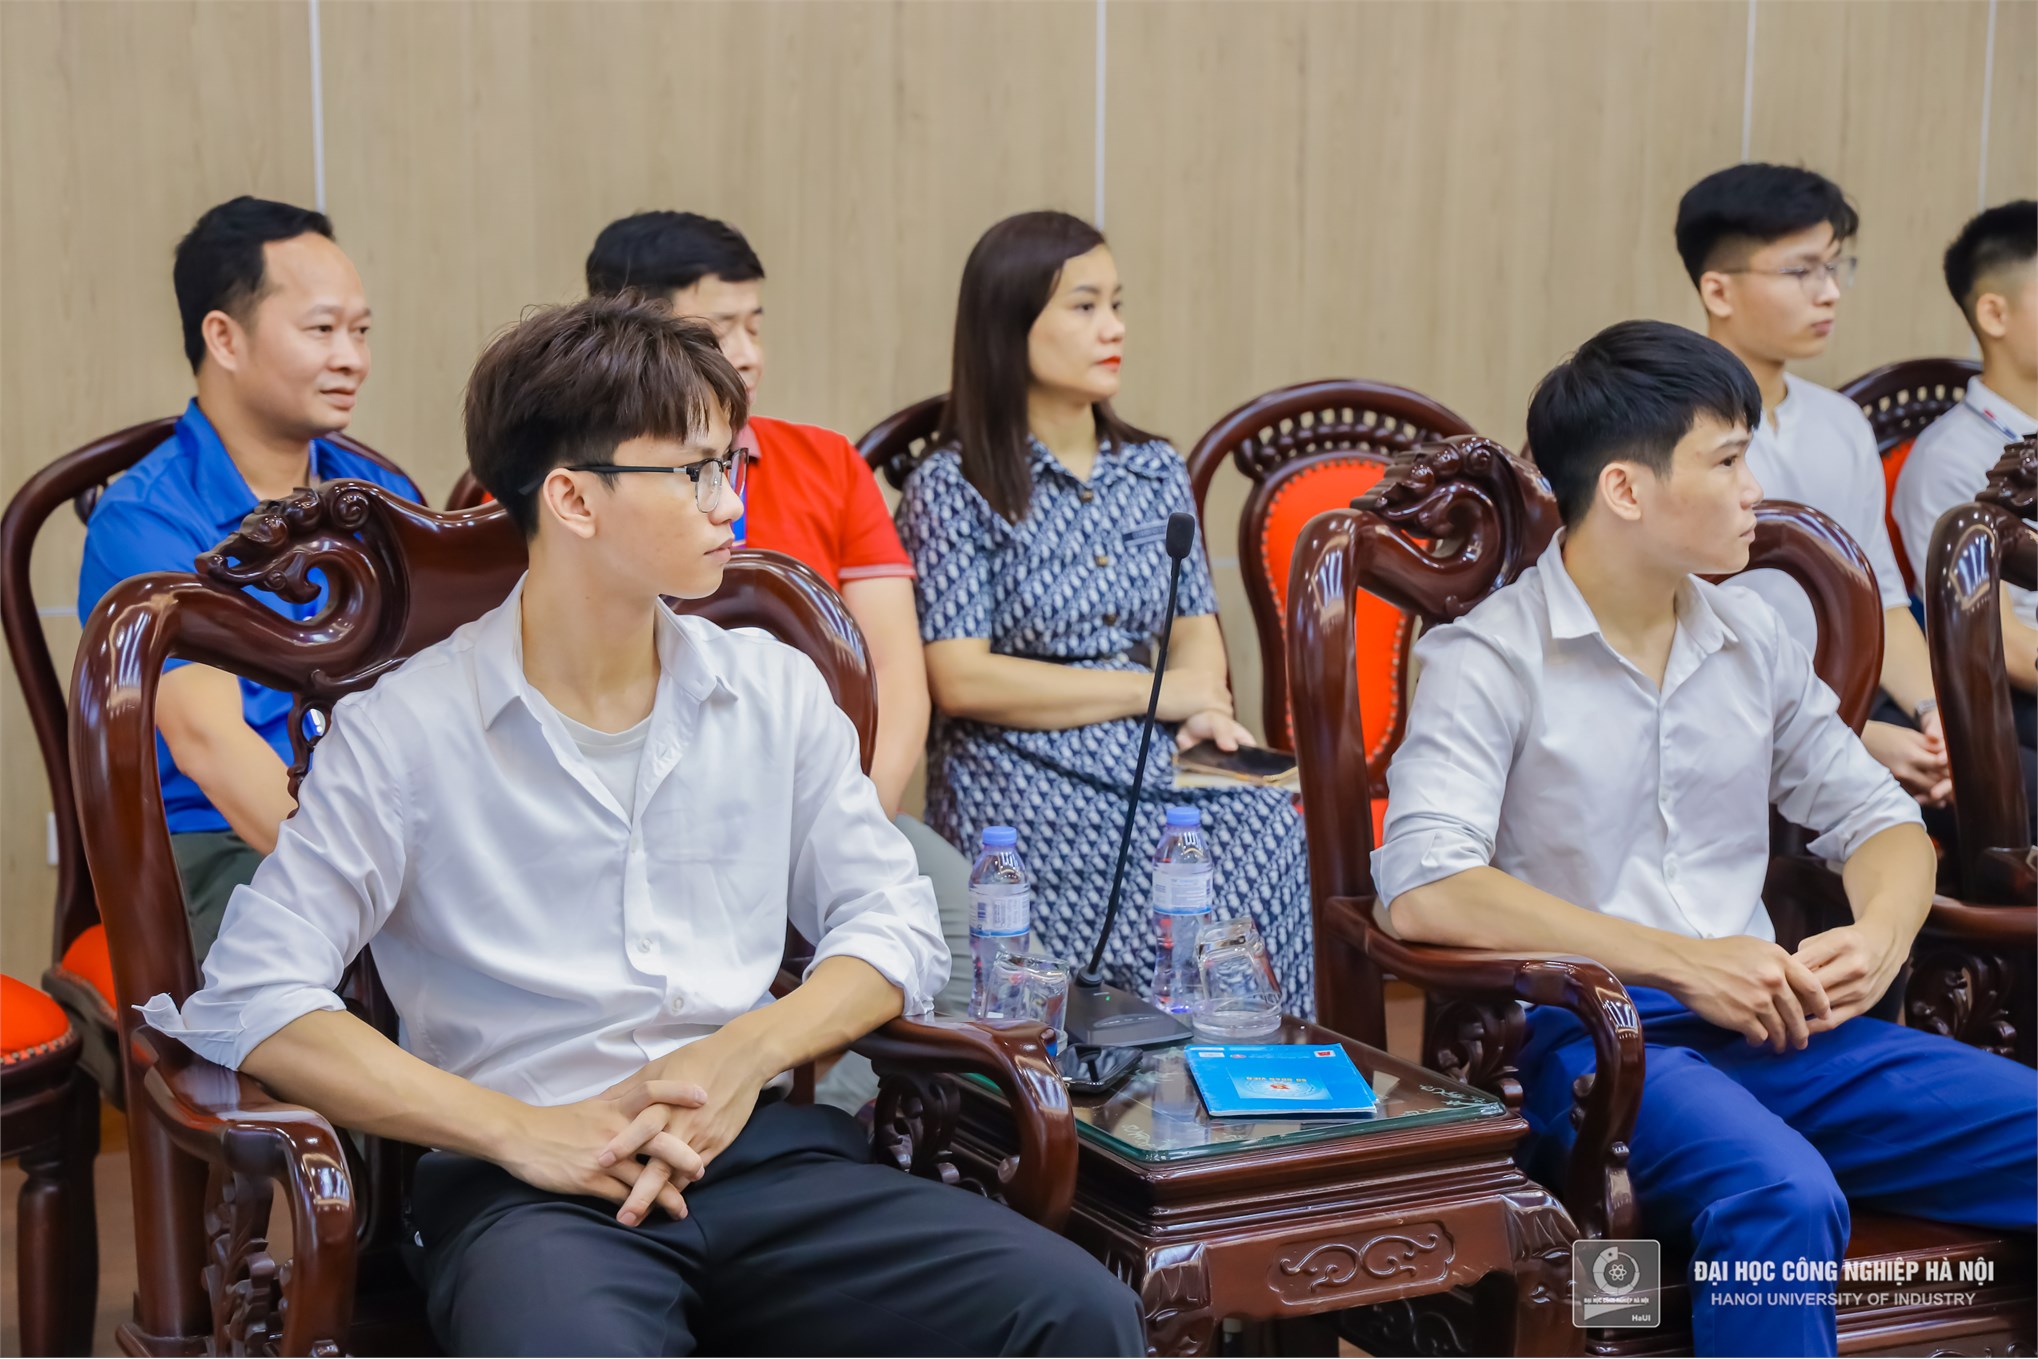 Trường Đại học Công nghiệp Hà Nội giao nhiệm vụ cho 20 sinh viên tốt nghiệp đại học đi đào tạo Sỹ quan dự bị